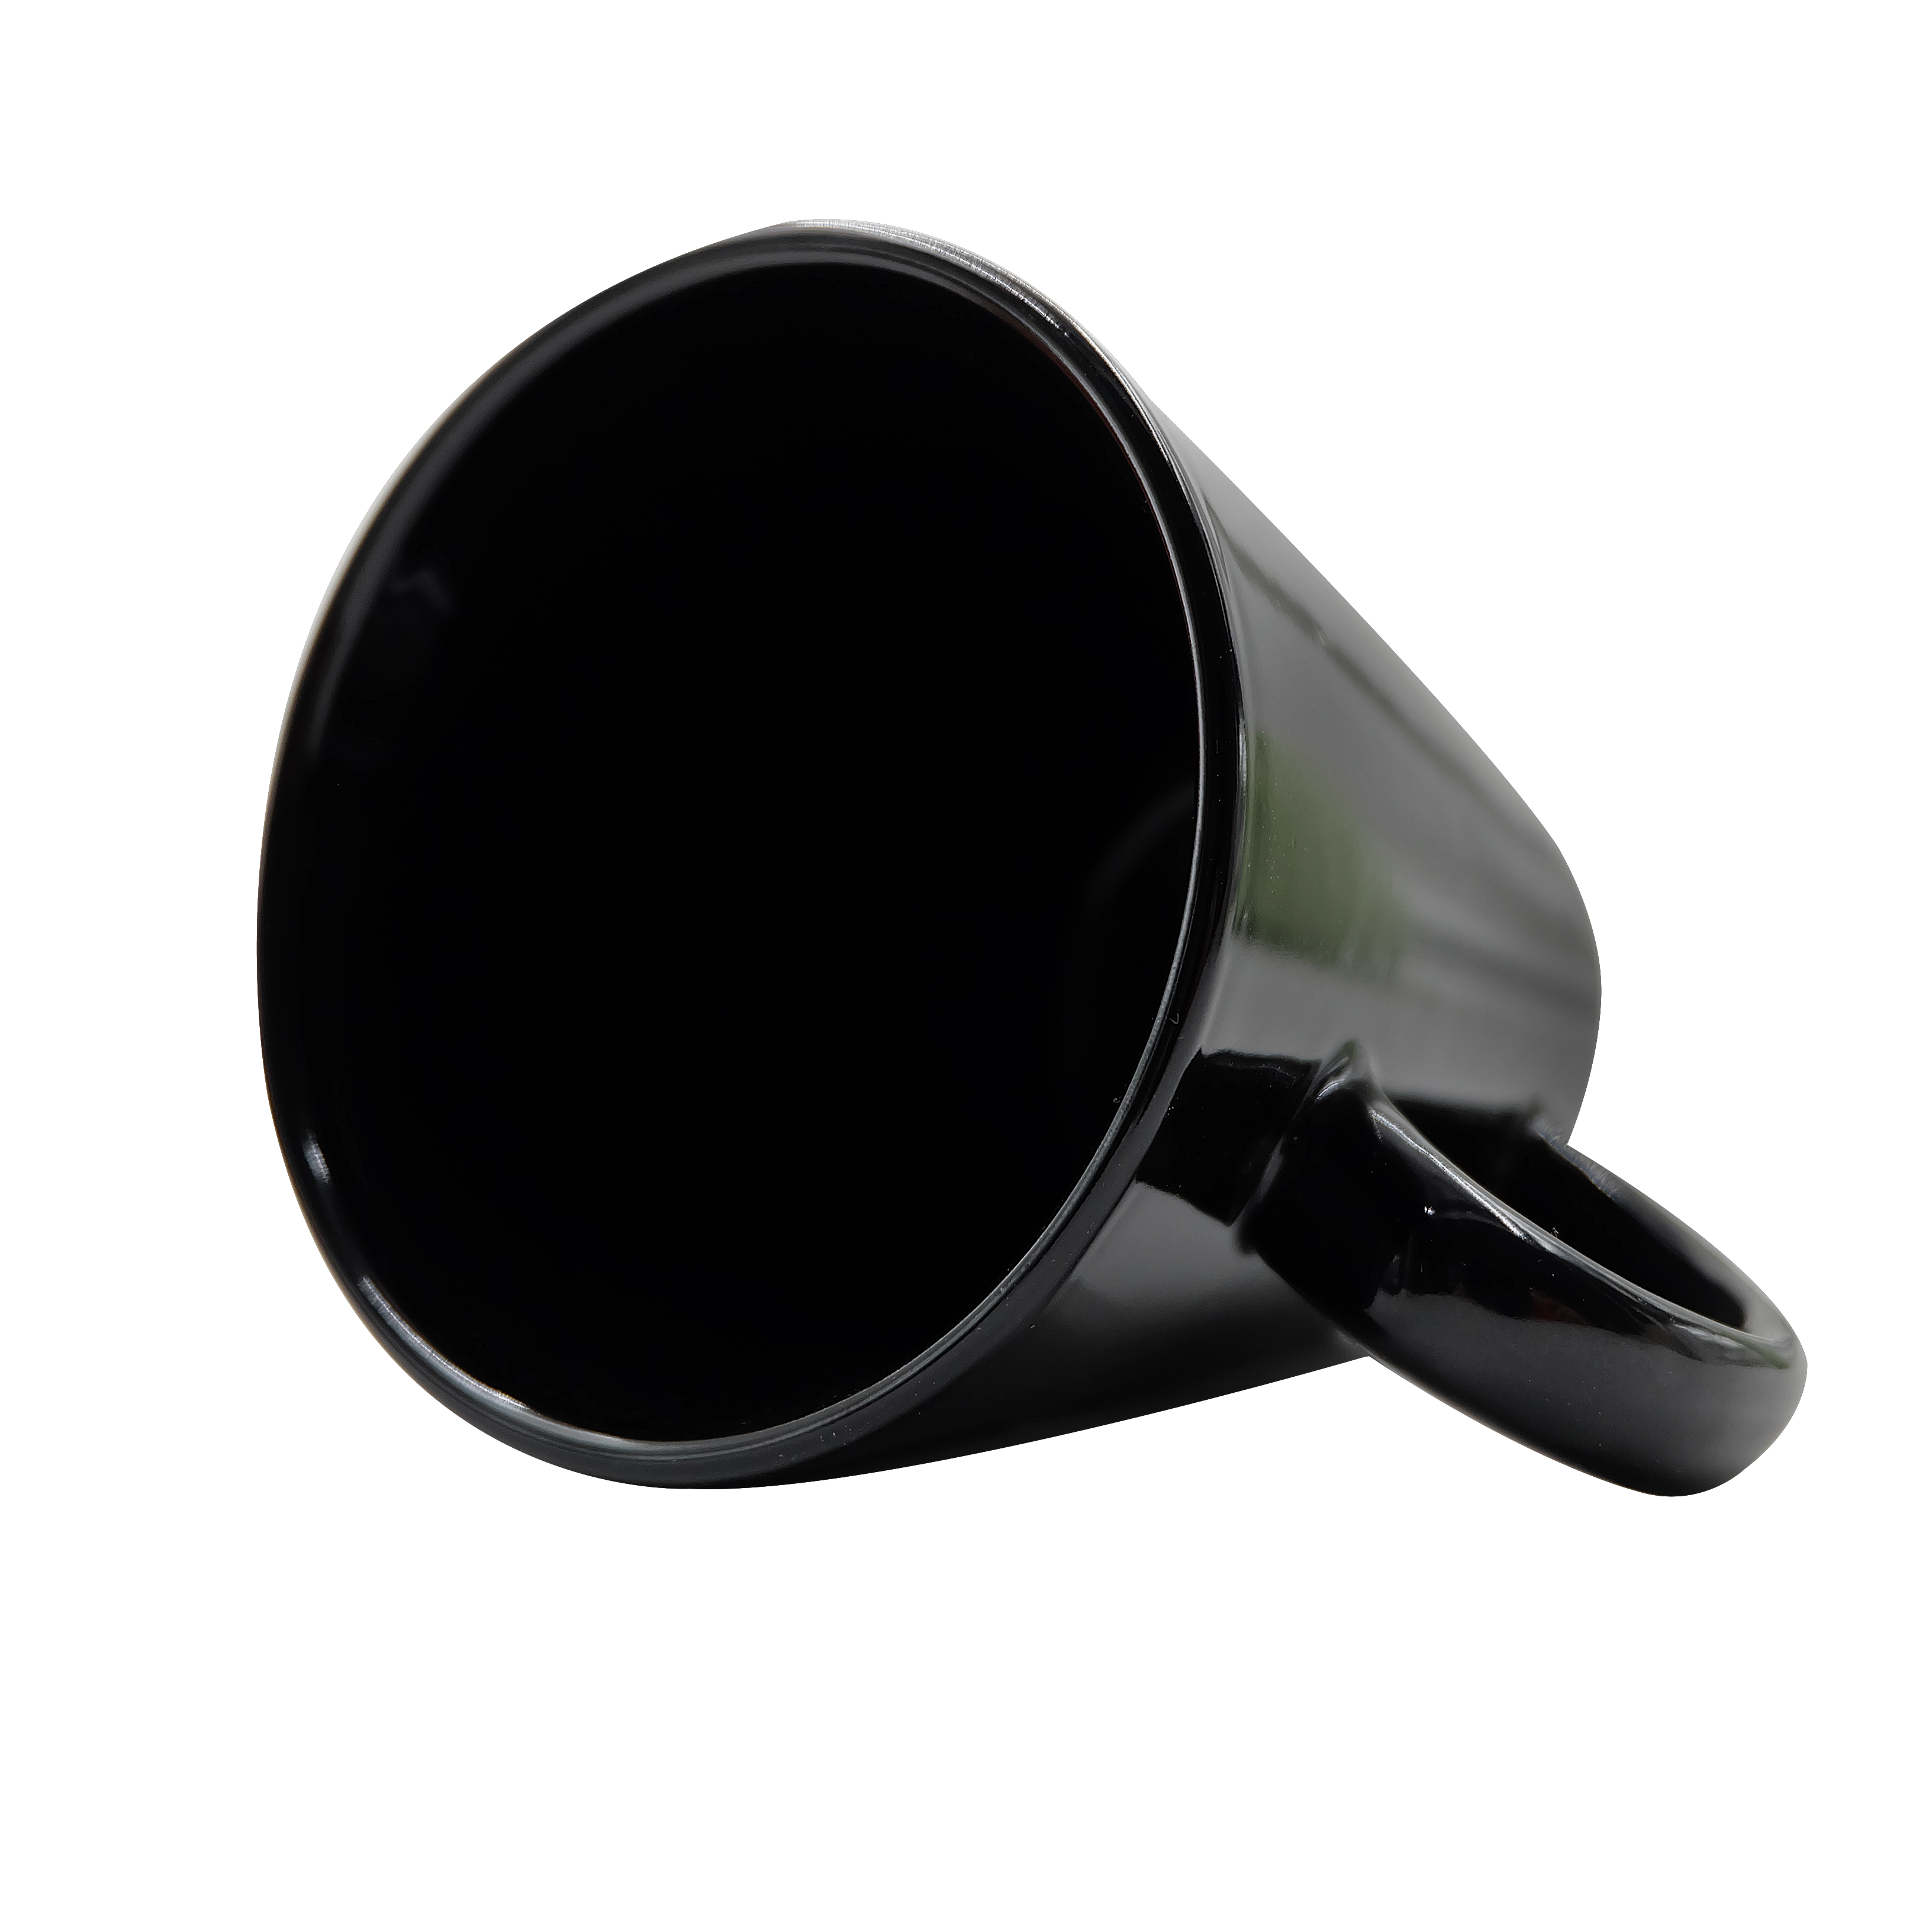 Top Quality 11OZ White Ceramic Coffee Mug With Custom Logo